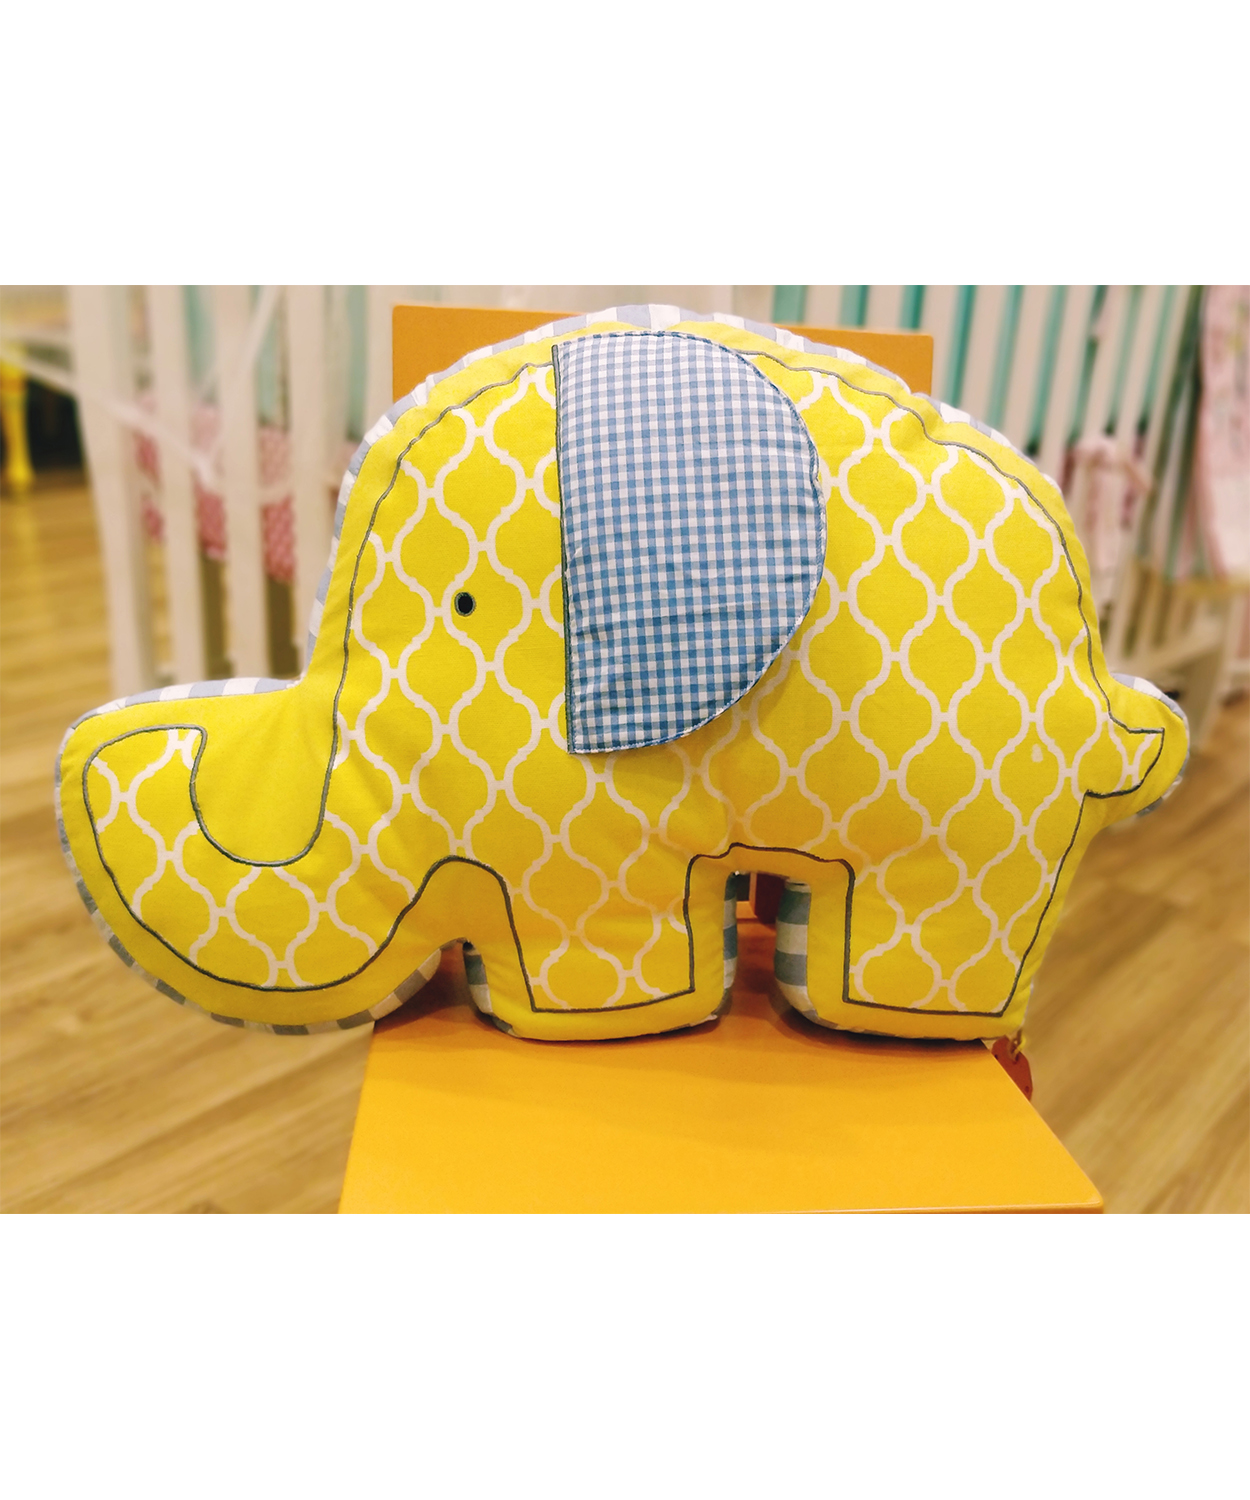 Elephant Shaped Cushion